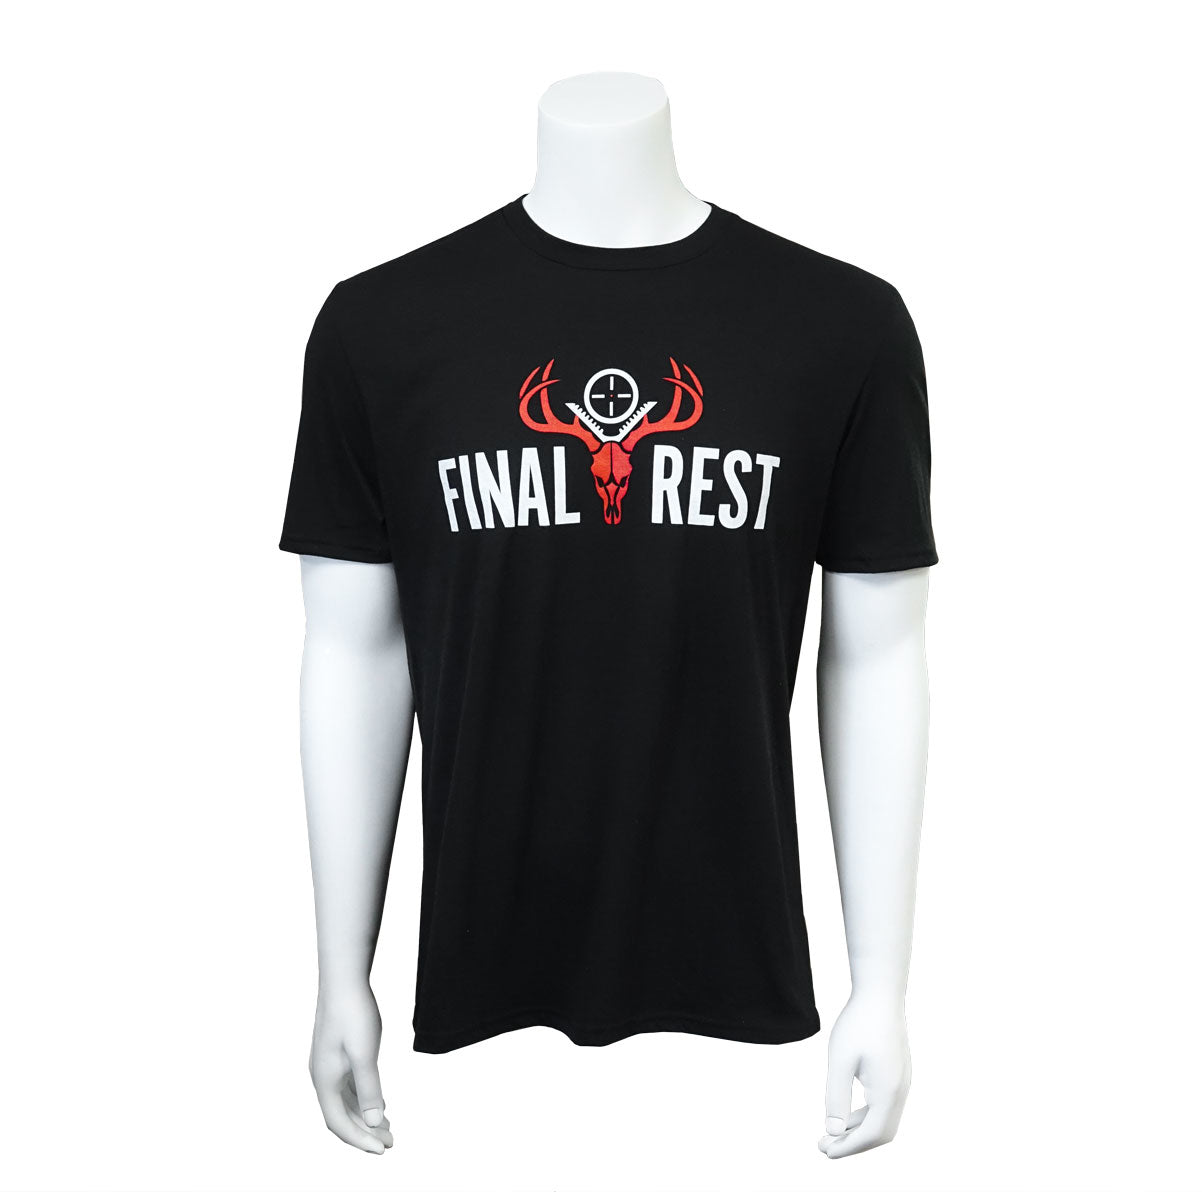 Black Final Rest T-shirt